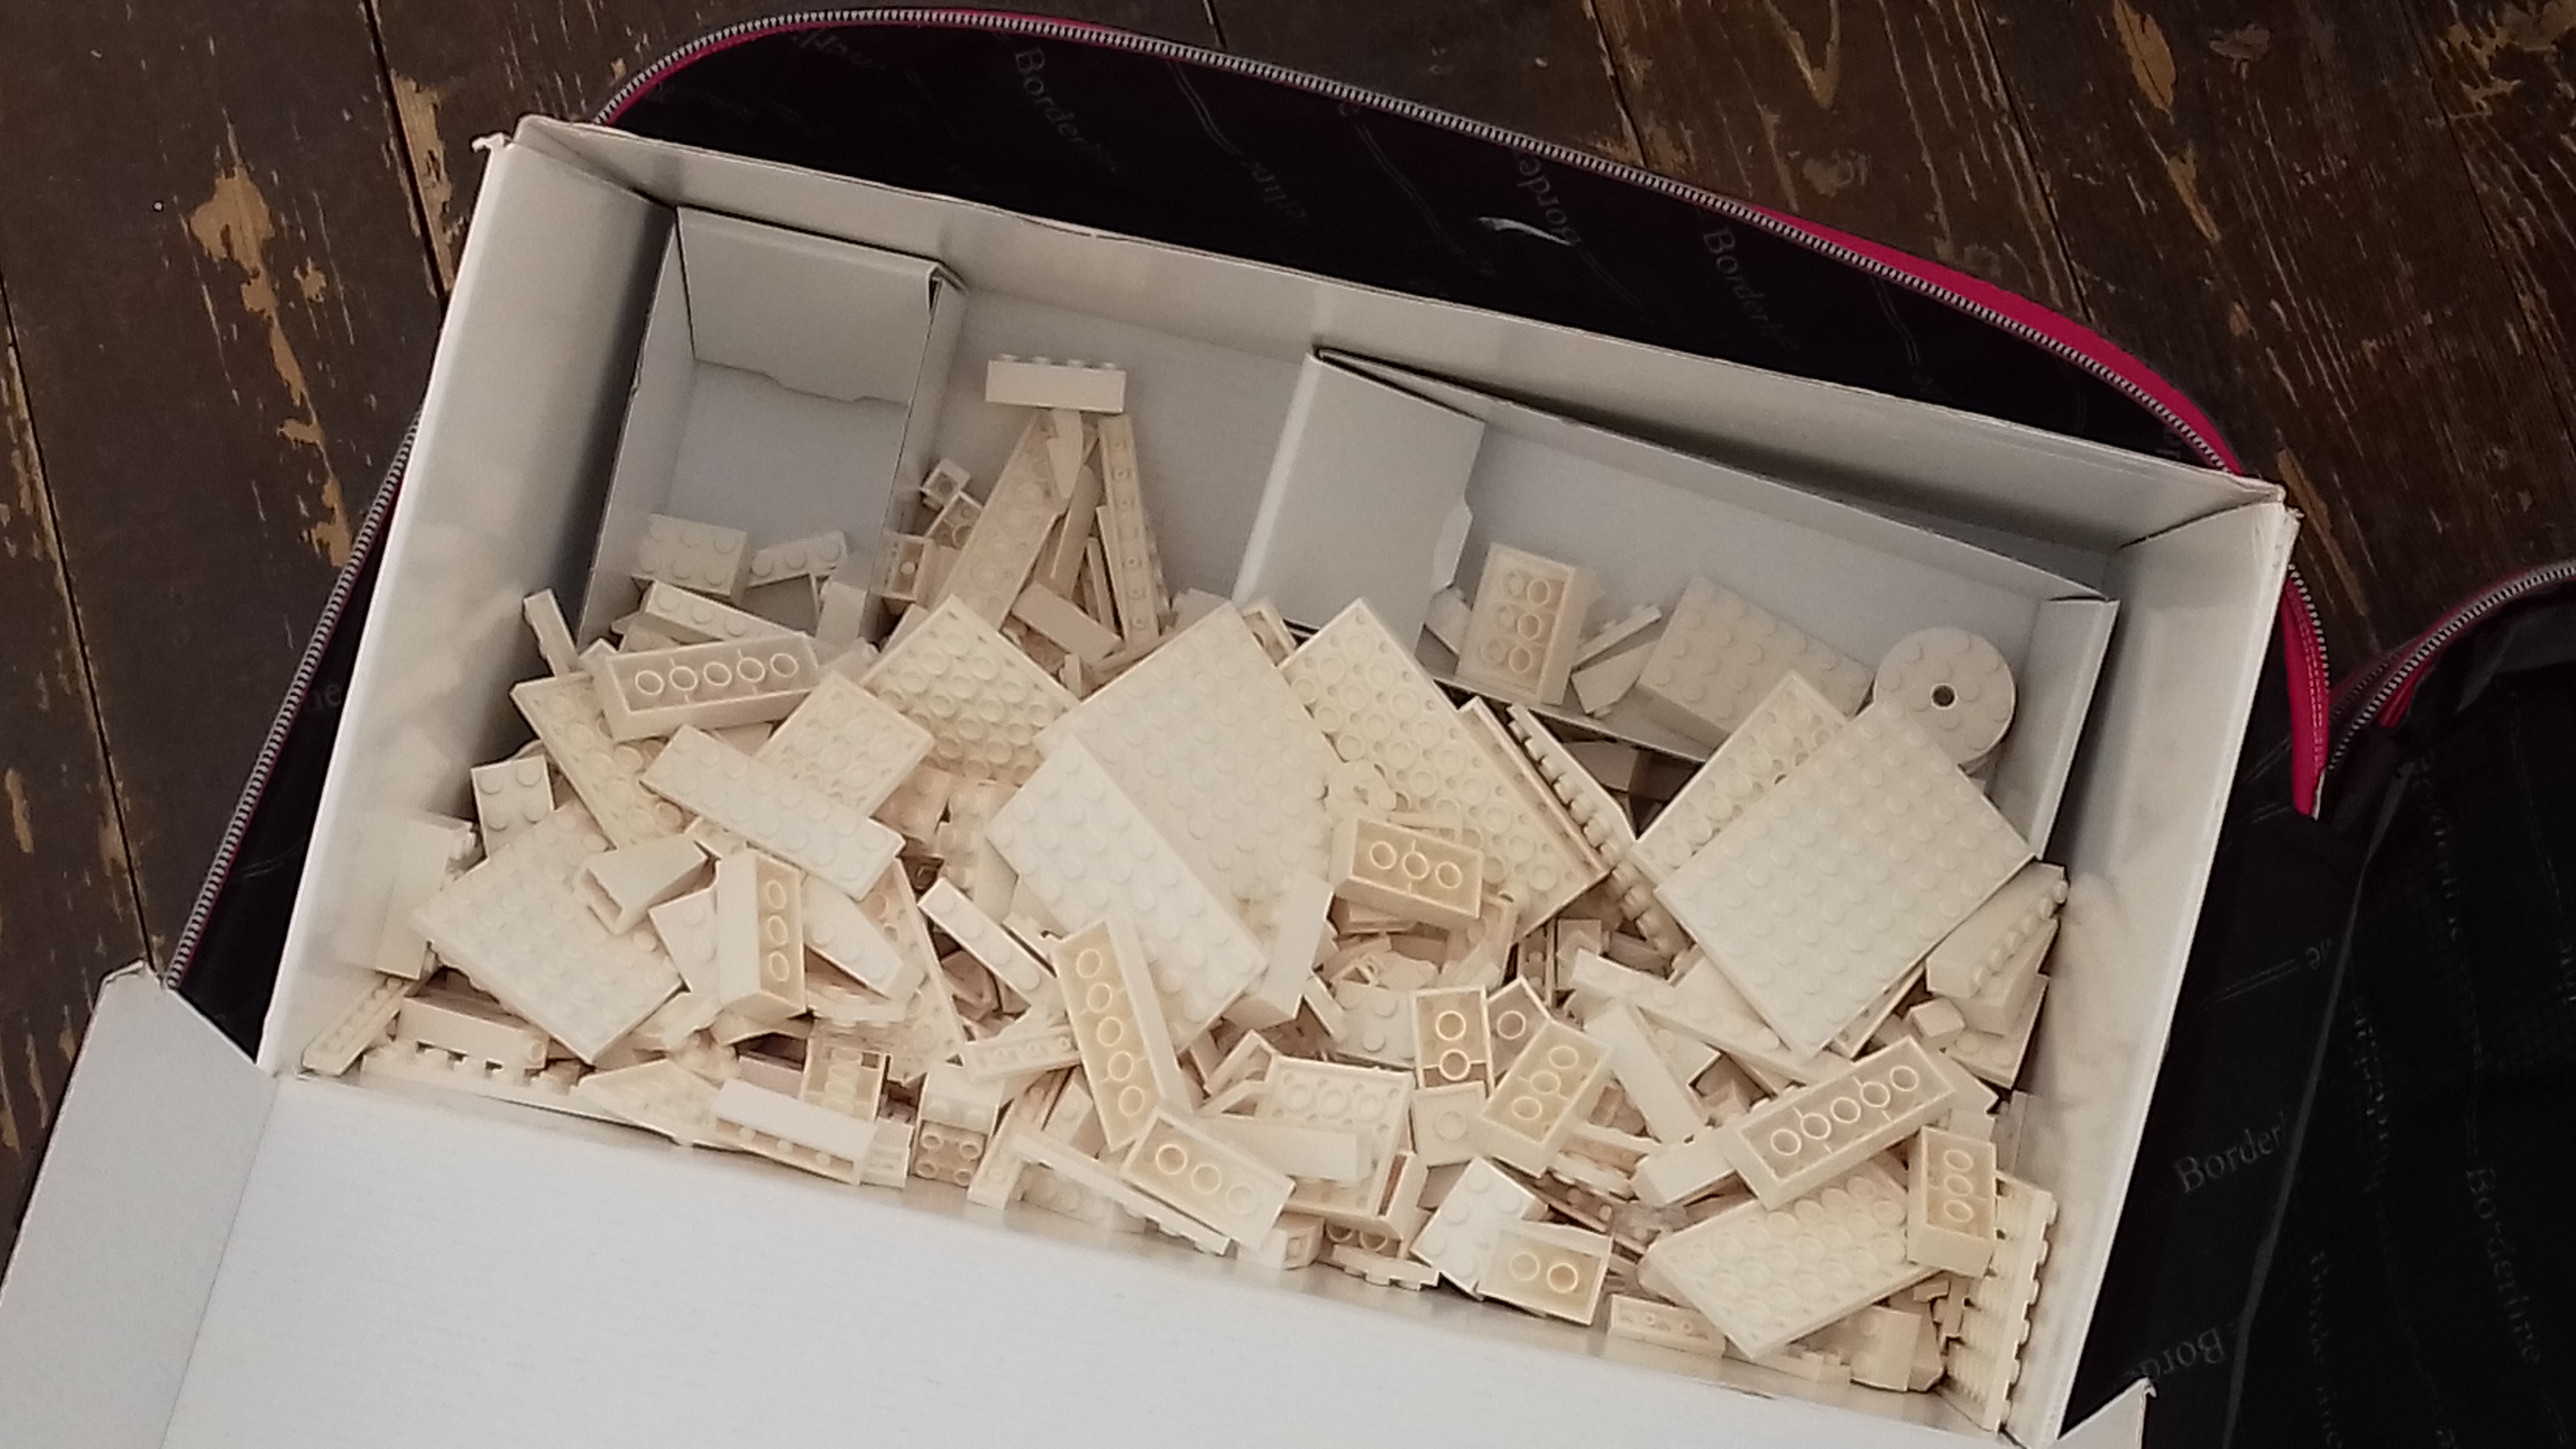 Unpacking the Mindful Lego suitcase